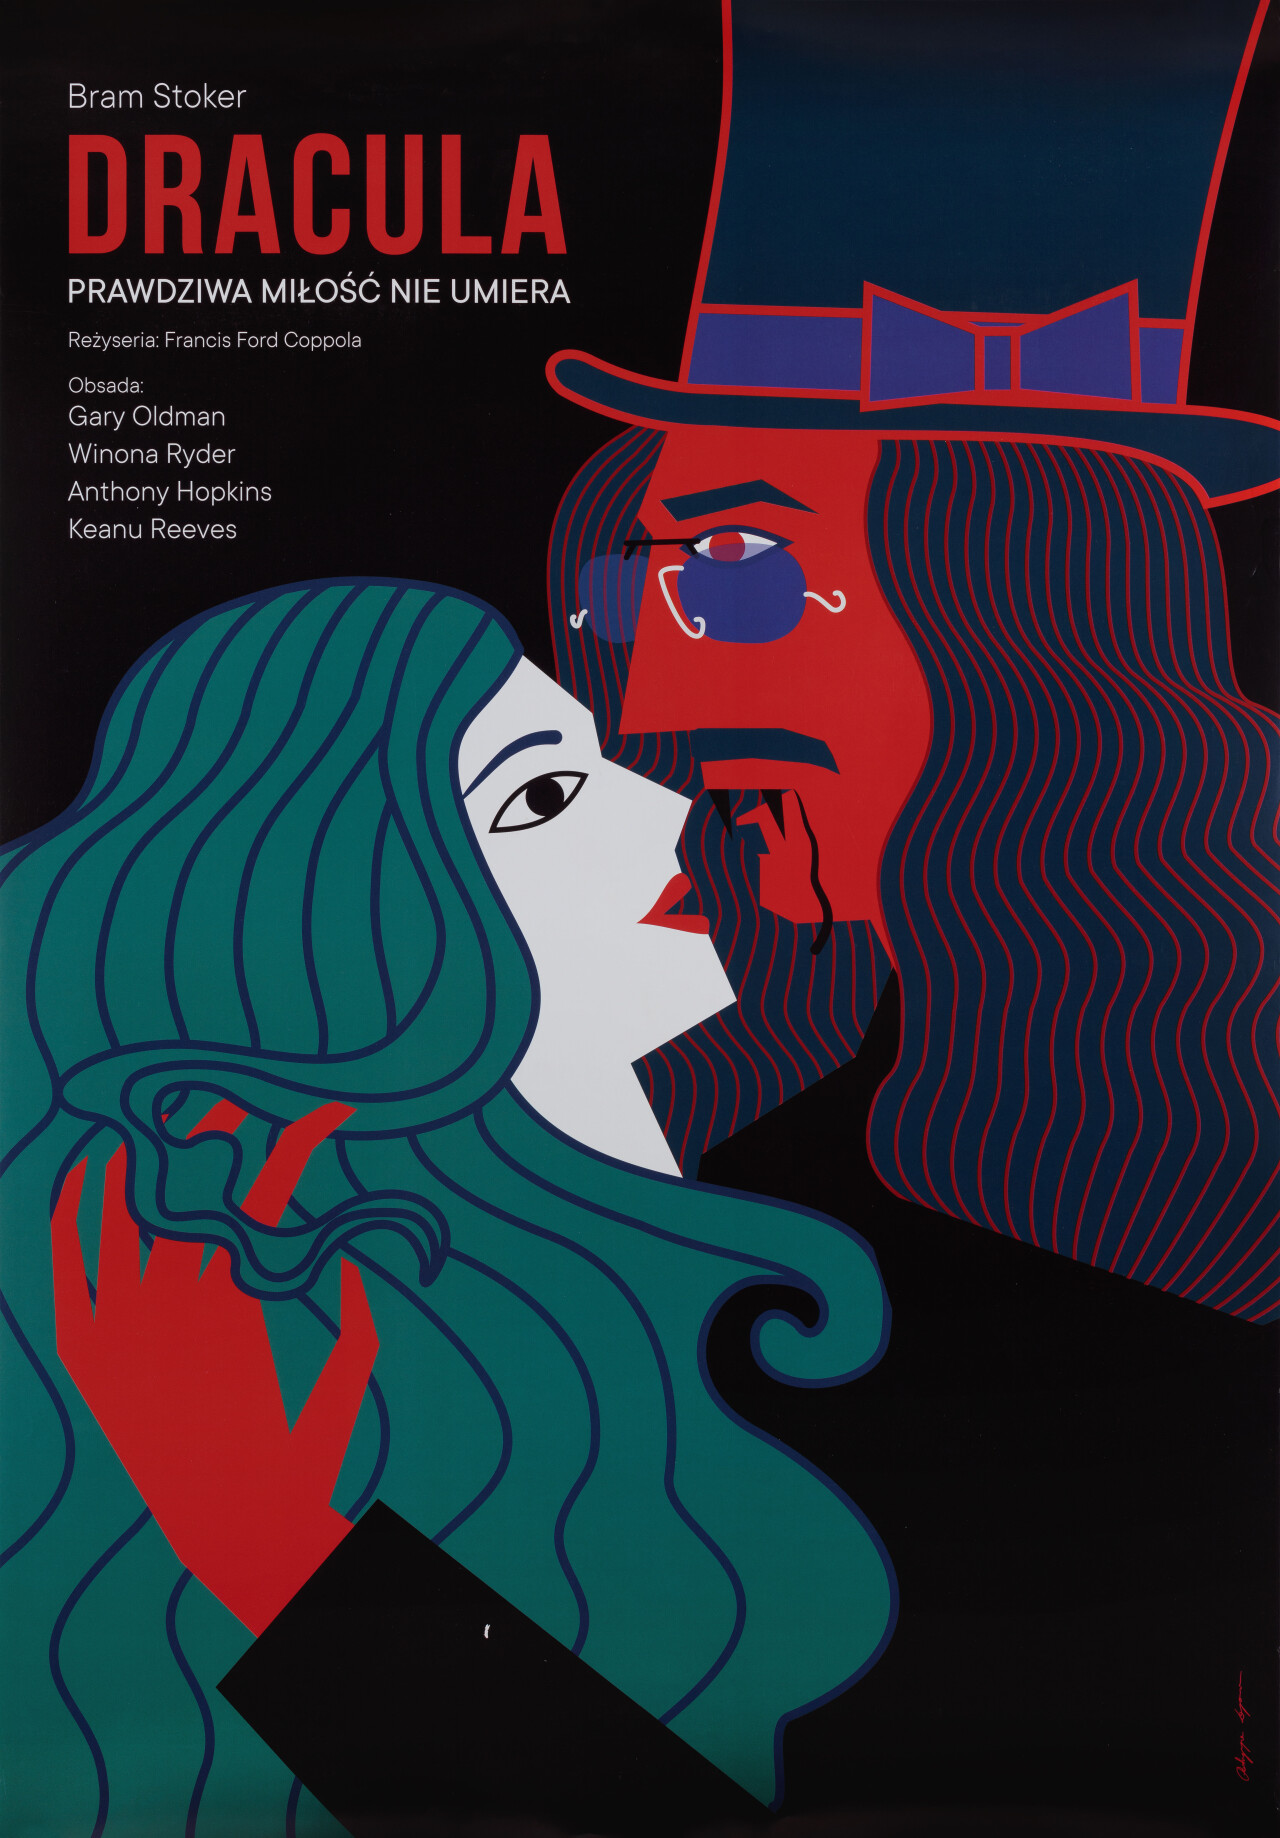 Дракула (Dracula, 1992), режиссёр Фрэнсис Форд Коппола, польский постер к фильму, автор Патриция Лонгава (ужасы, 2019 год)